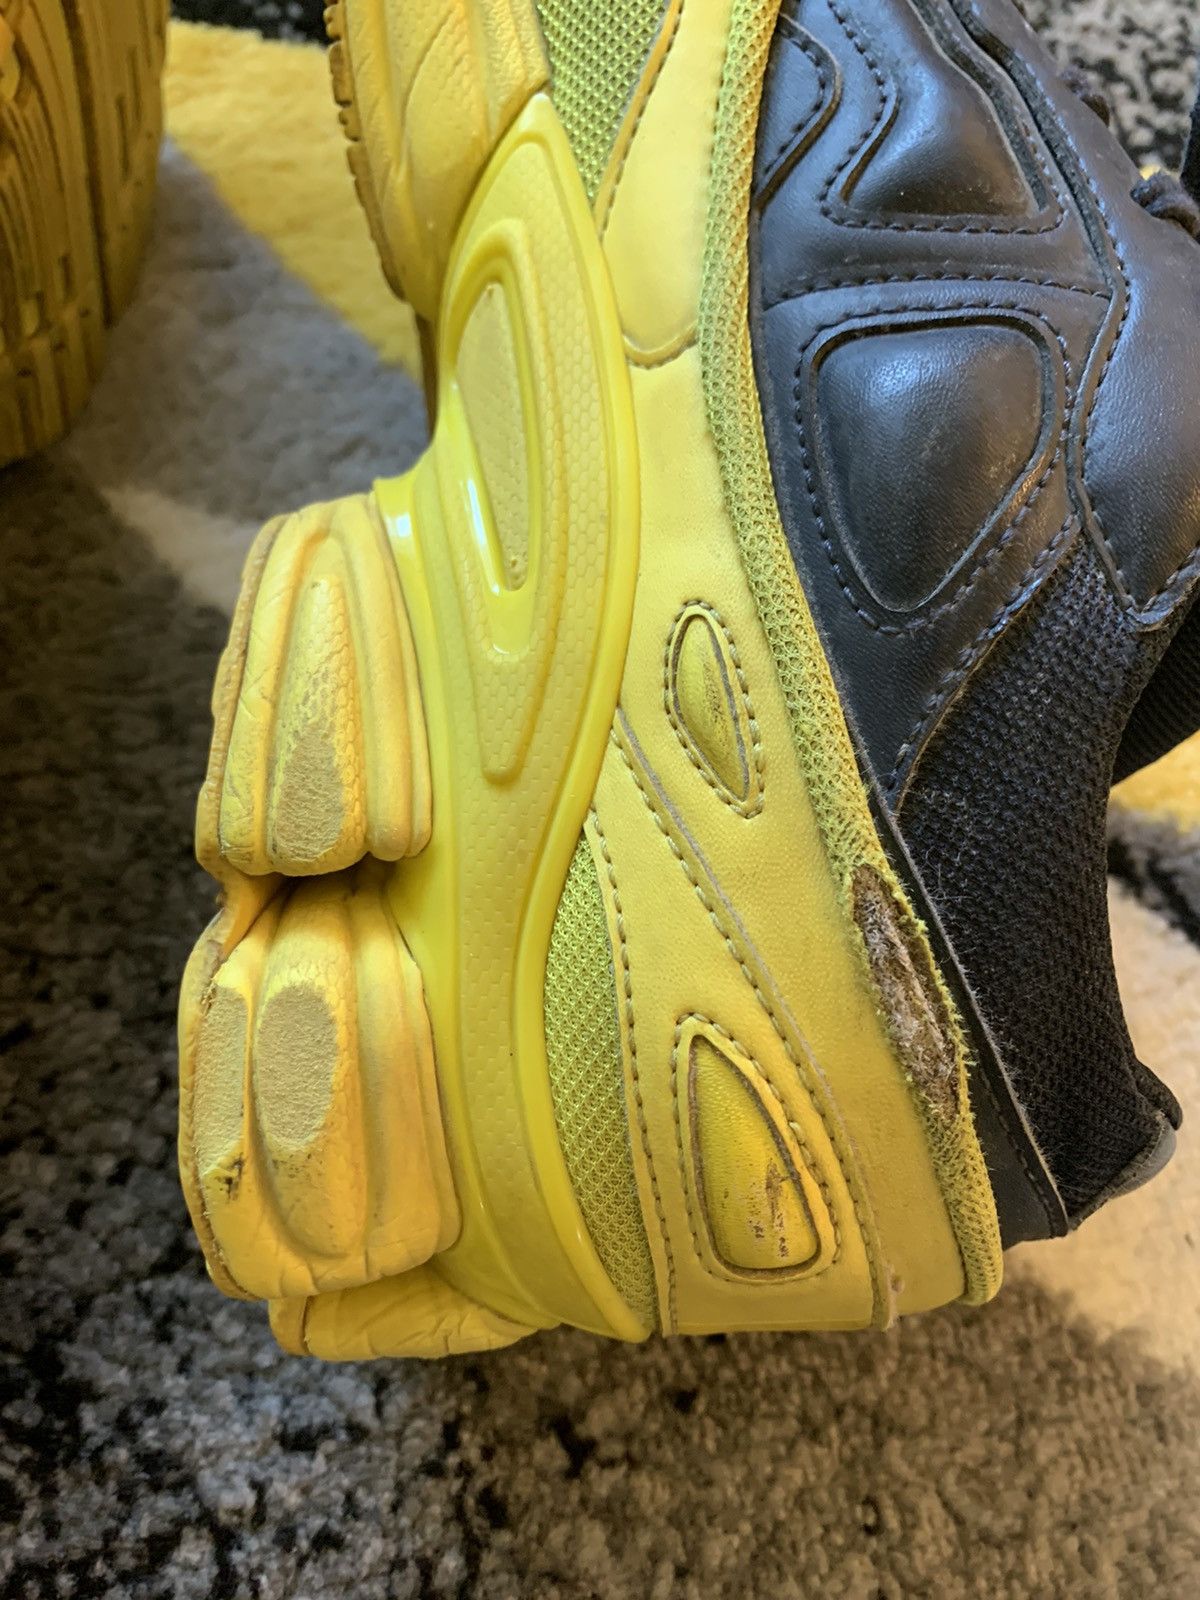 Adidas Ozweegos Black Yellow Size US 10 / EU 43 - 12 Thumbnail